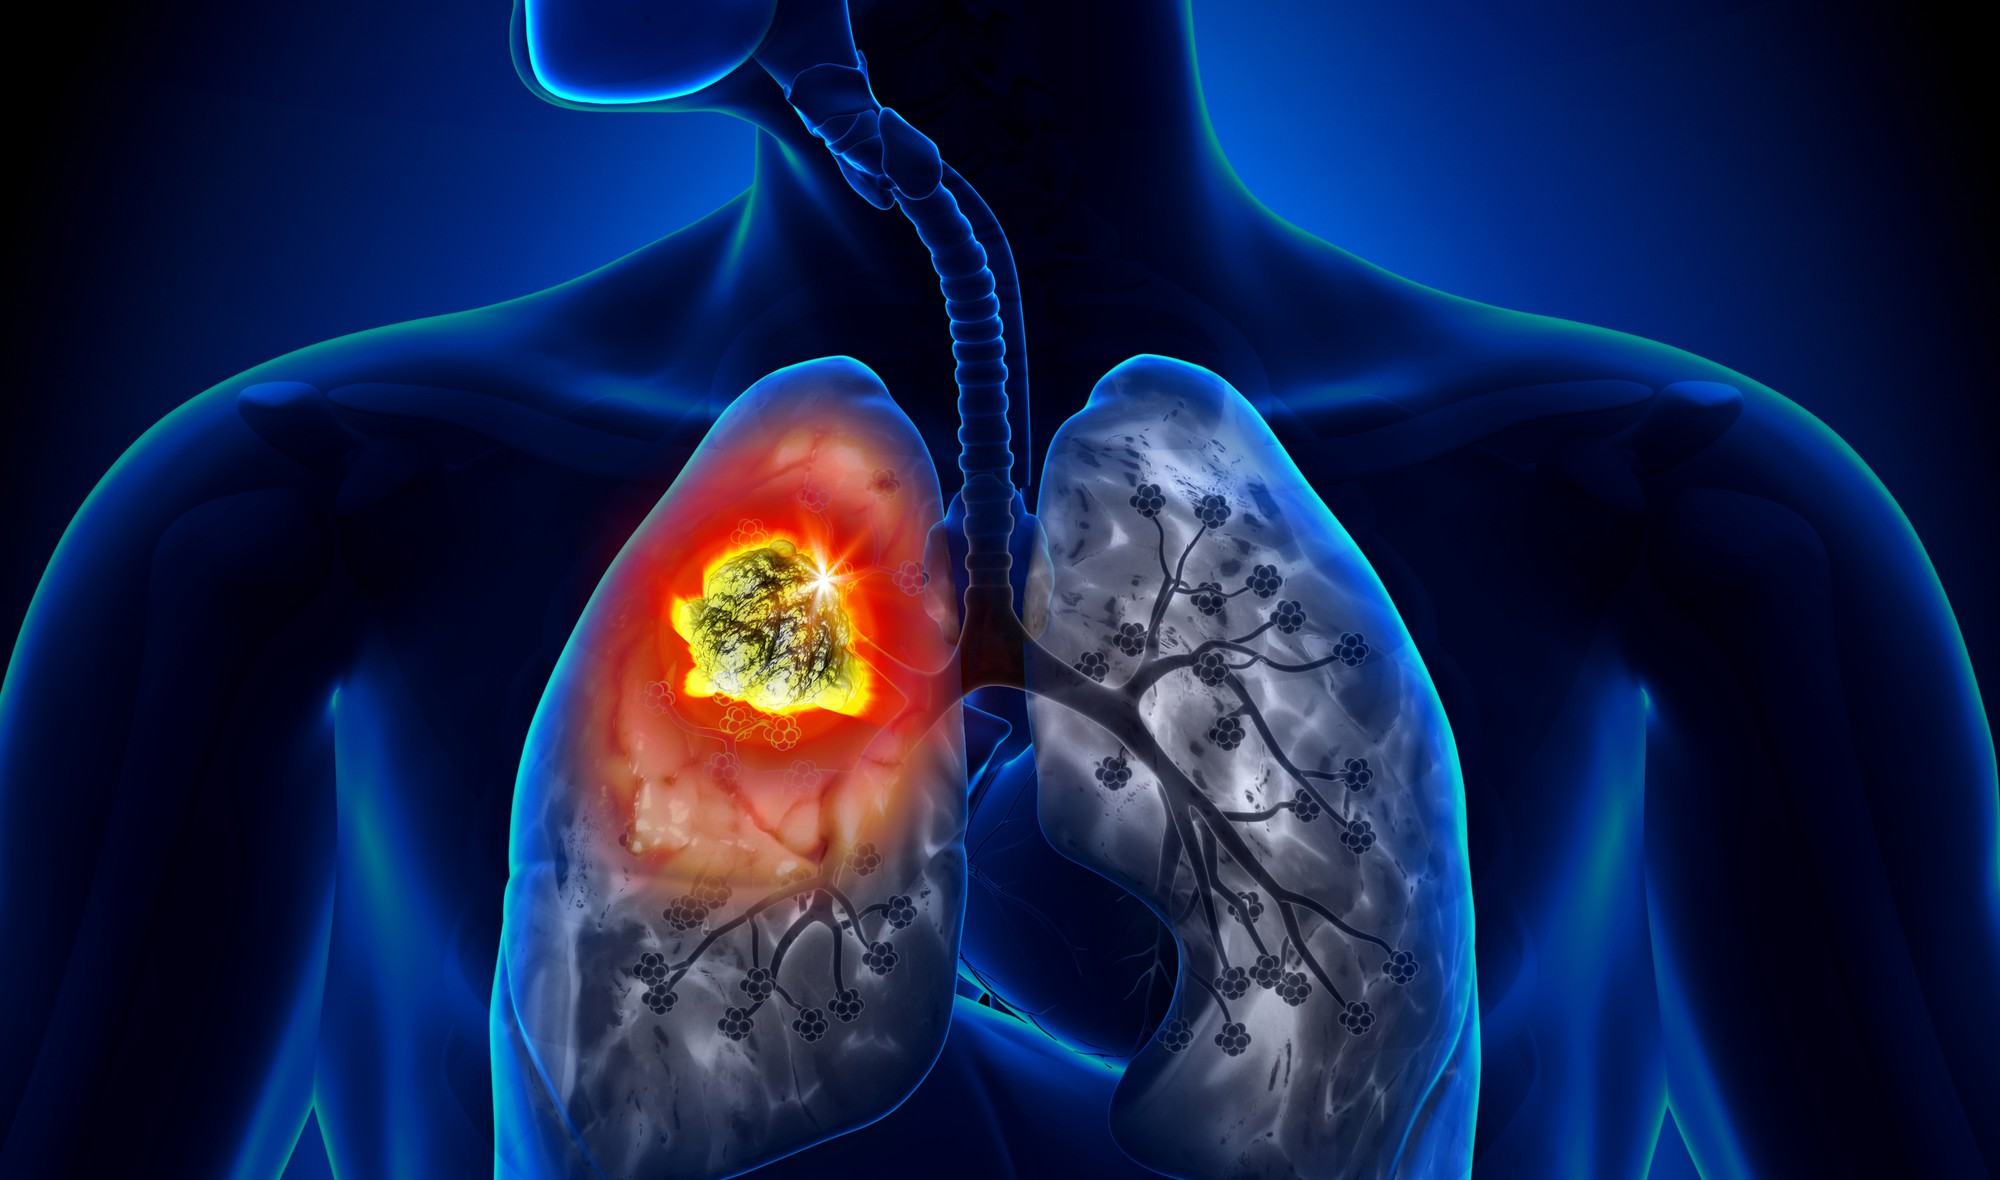 Ung thư phổi: Căn bệnh có thể mắc phải bất cứ lúc nào và nguyên nhân lại đến từ những thứ thân thuộc xung quanh bạn - Ảnh 2.